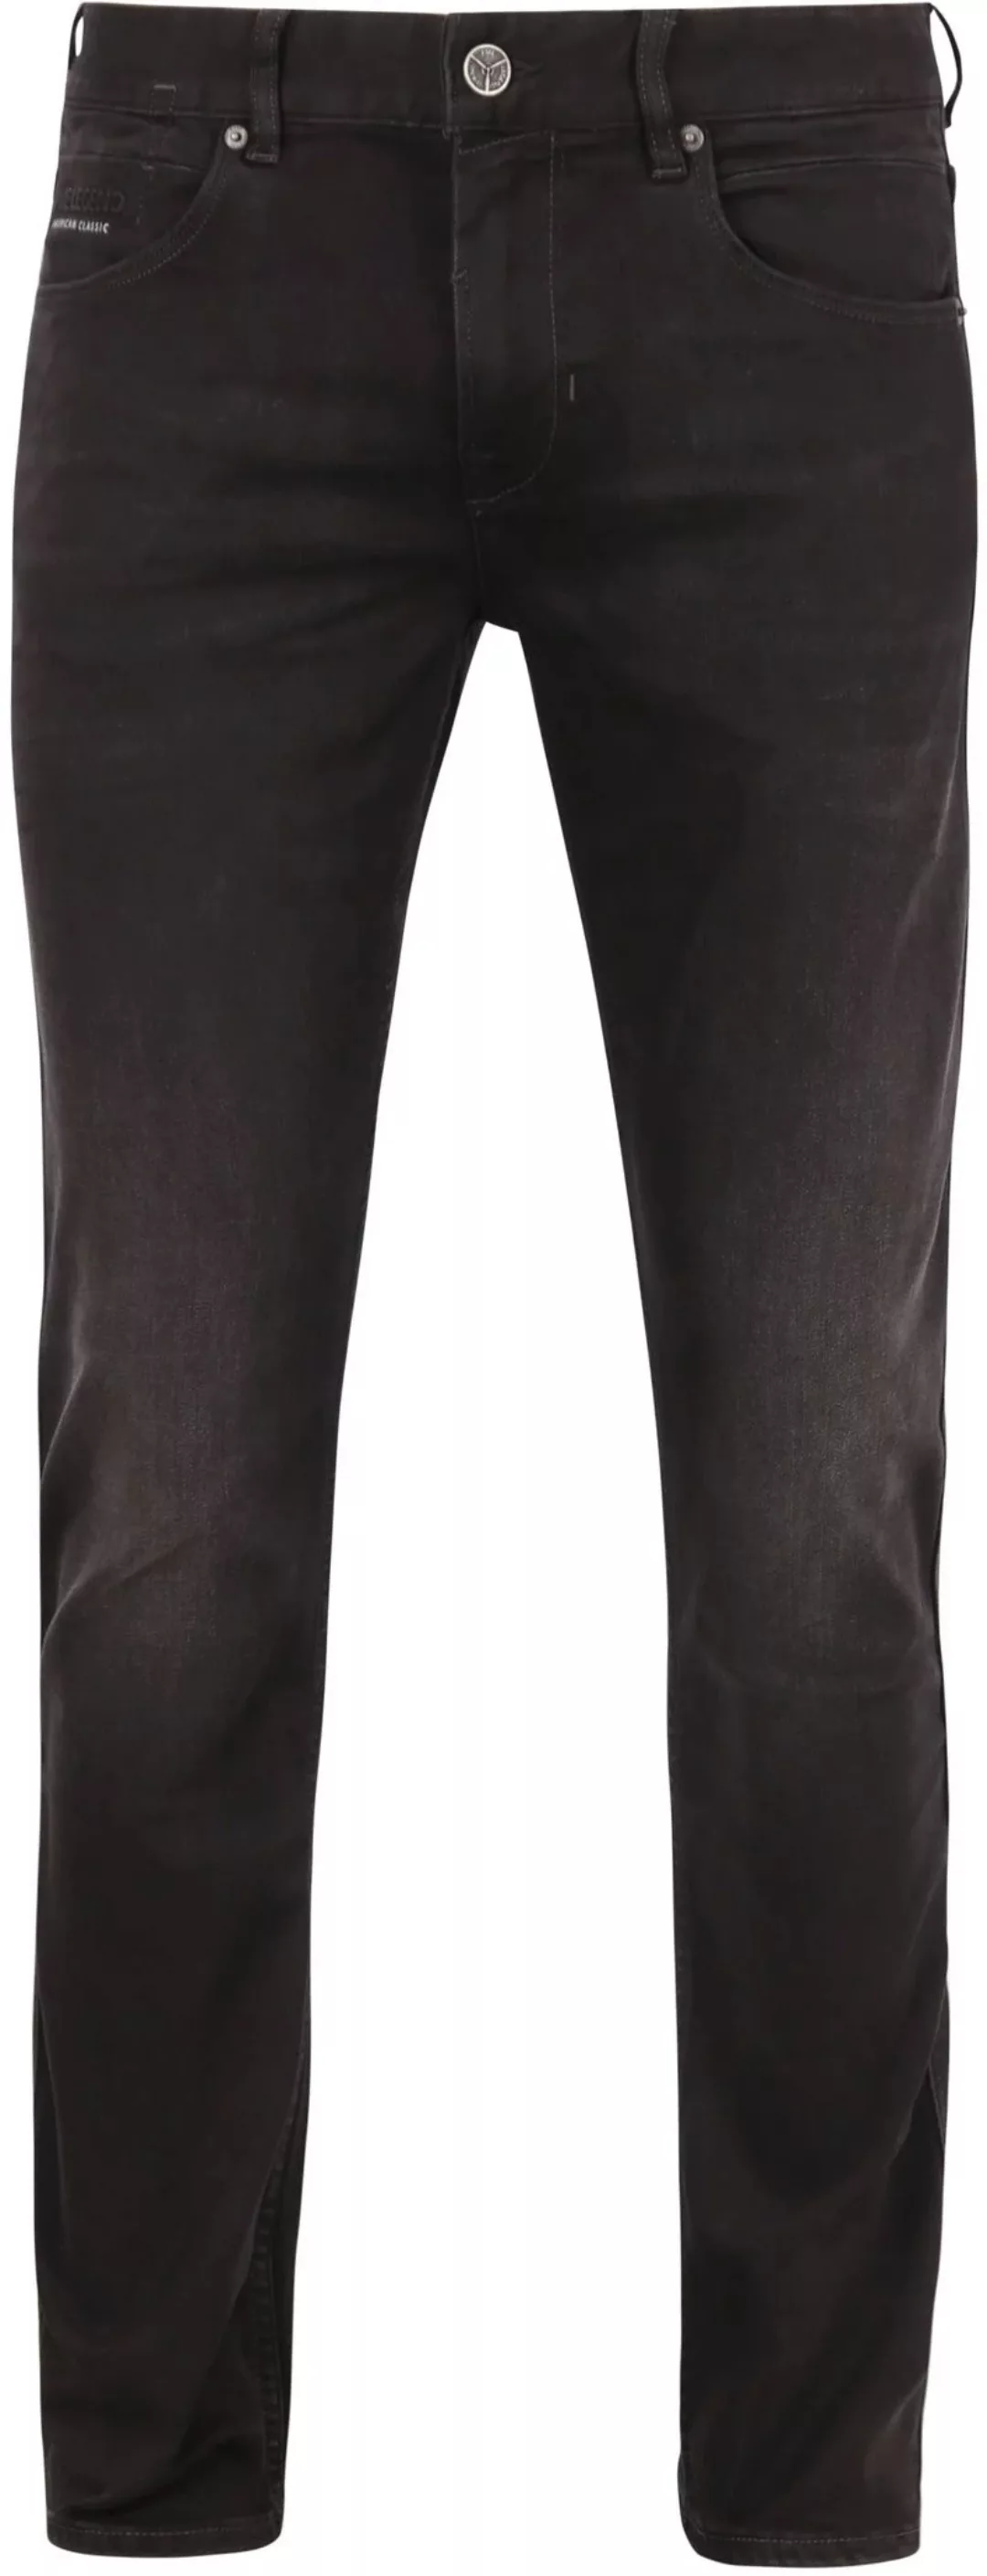 PME Legend Nightflight Jeans Schwarz RBD - Größe W 34 - L 36 günstig online kaufen